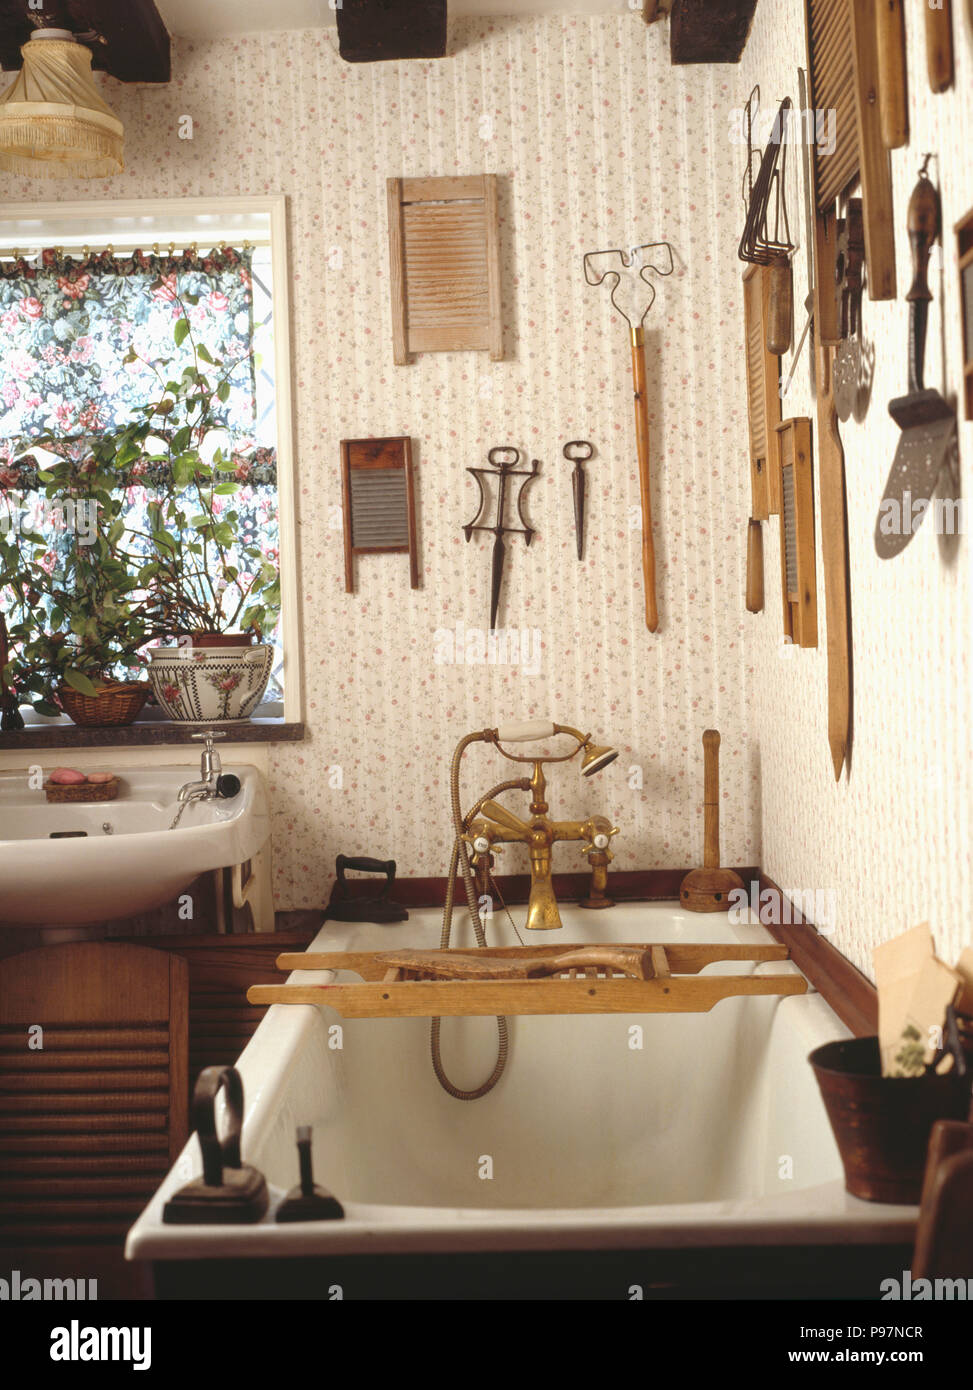 Sammlung von alten Waschbretter und Holz- Utensilien auf Wand über Badewanne mit Holz- bathrack im Land Bad Stockfoto